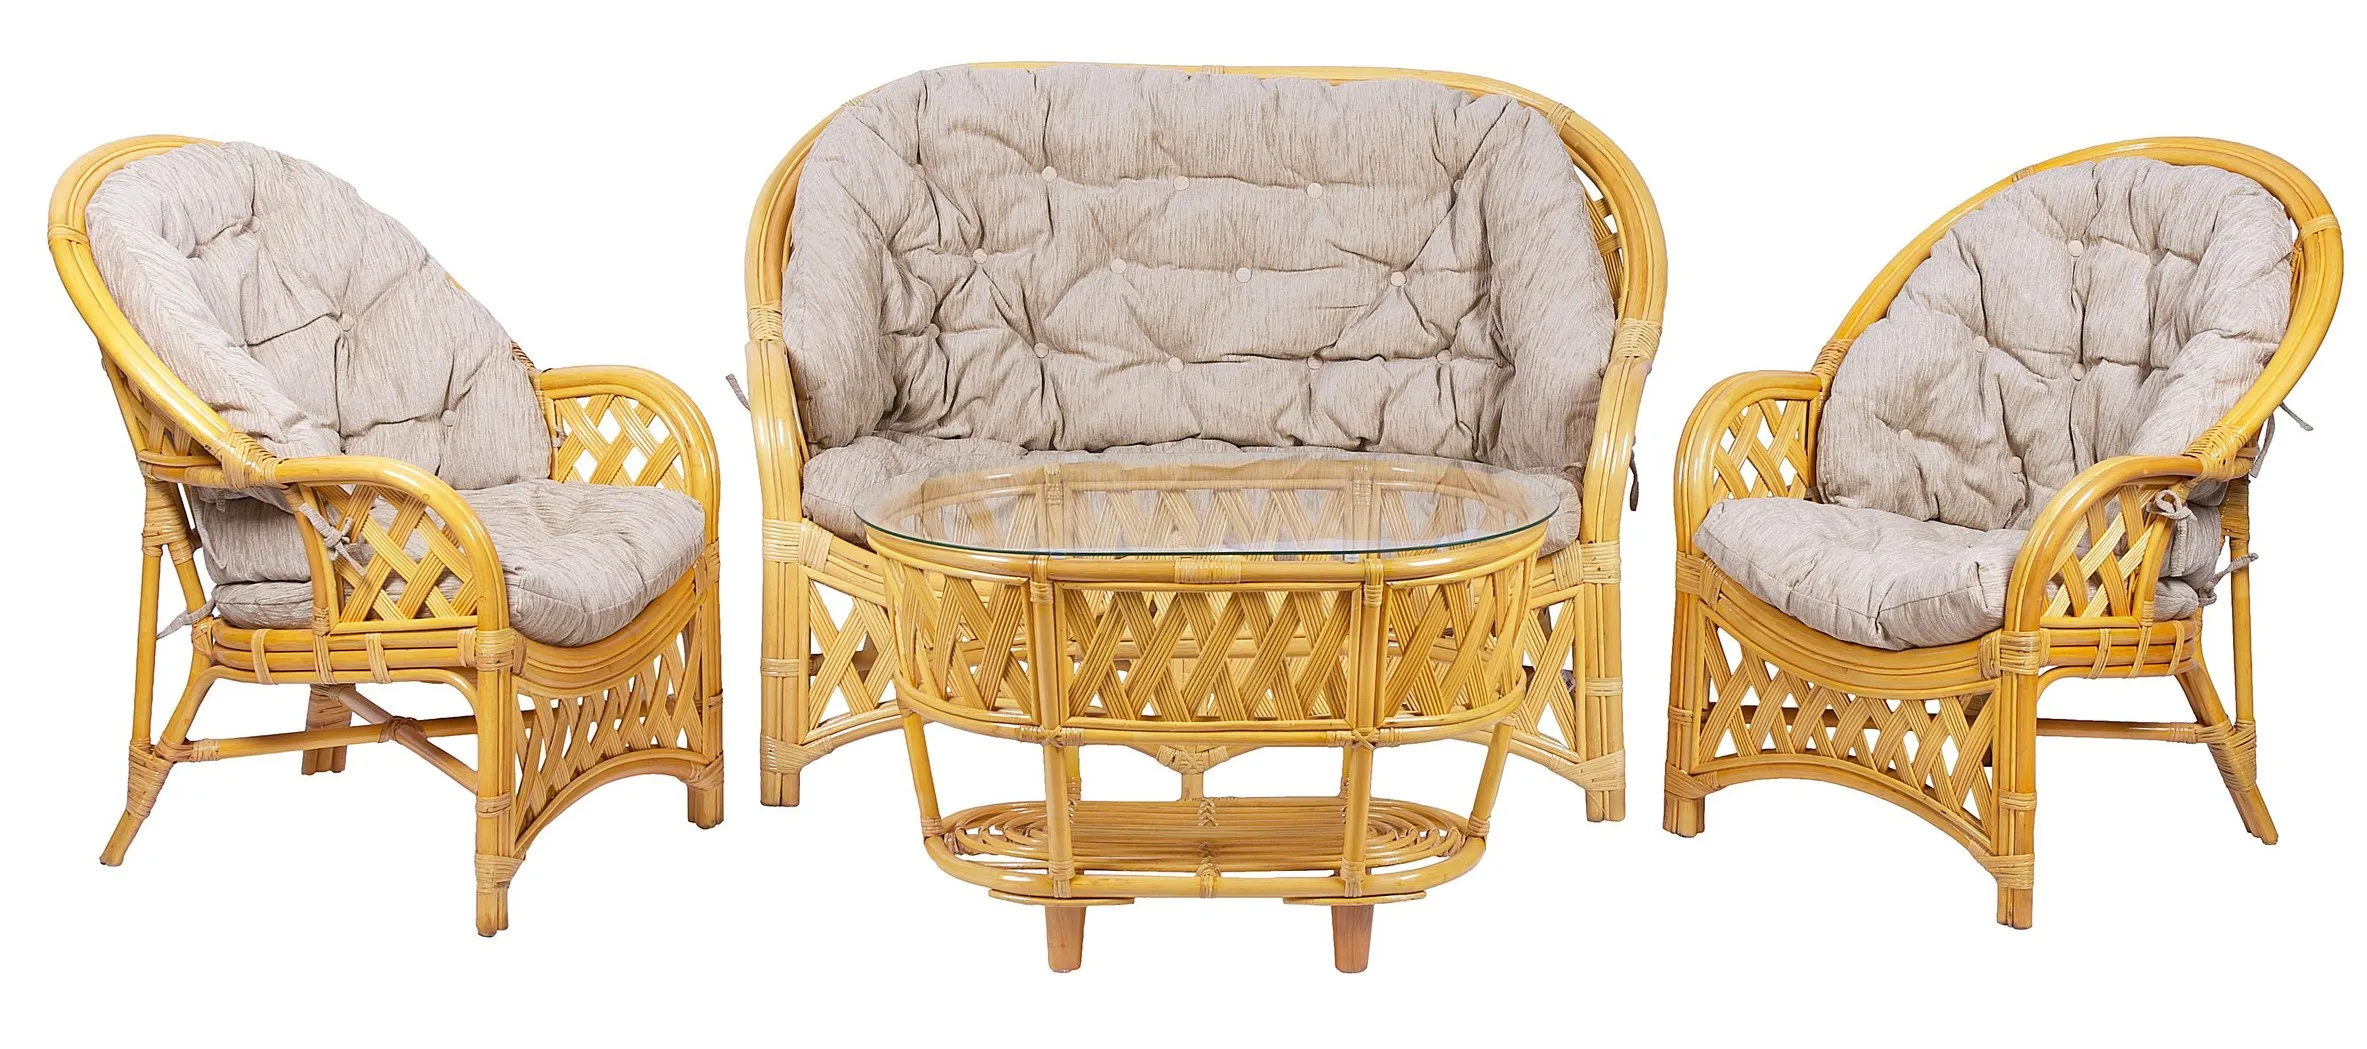 Комплект мебели из ротанга Черчилль (Рузвельт) с 2-х местным диваном и овальным столом мед